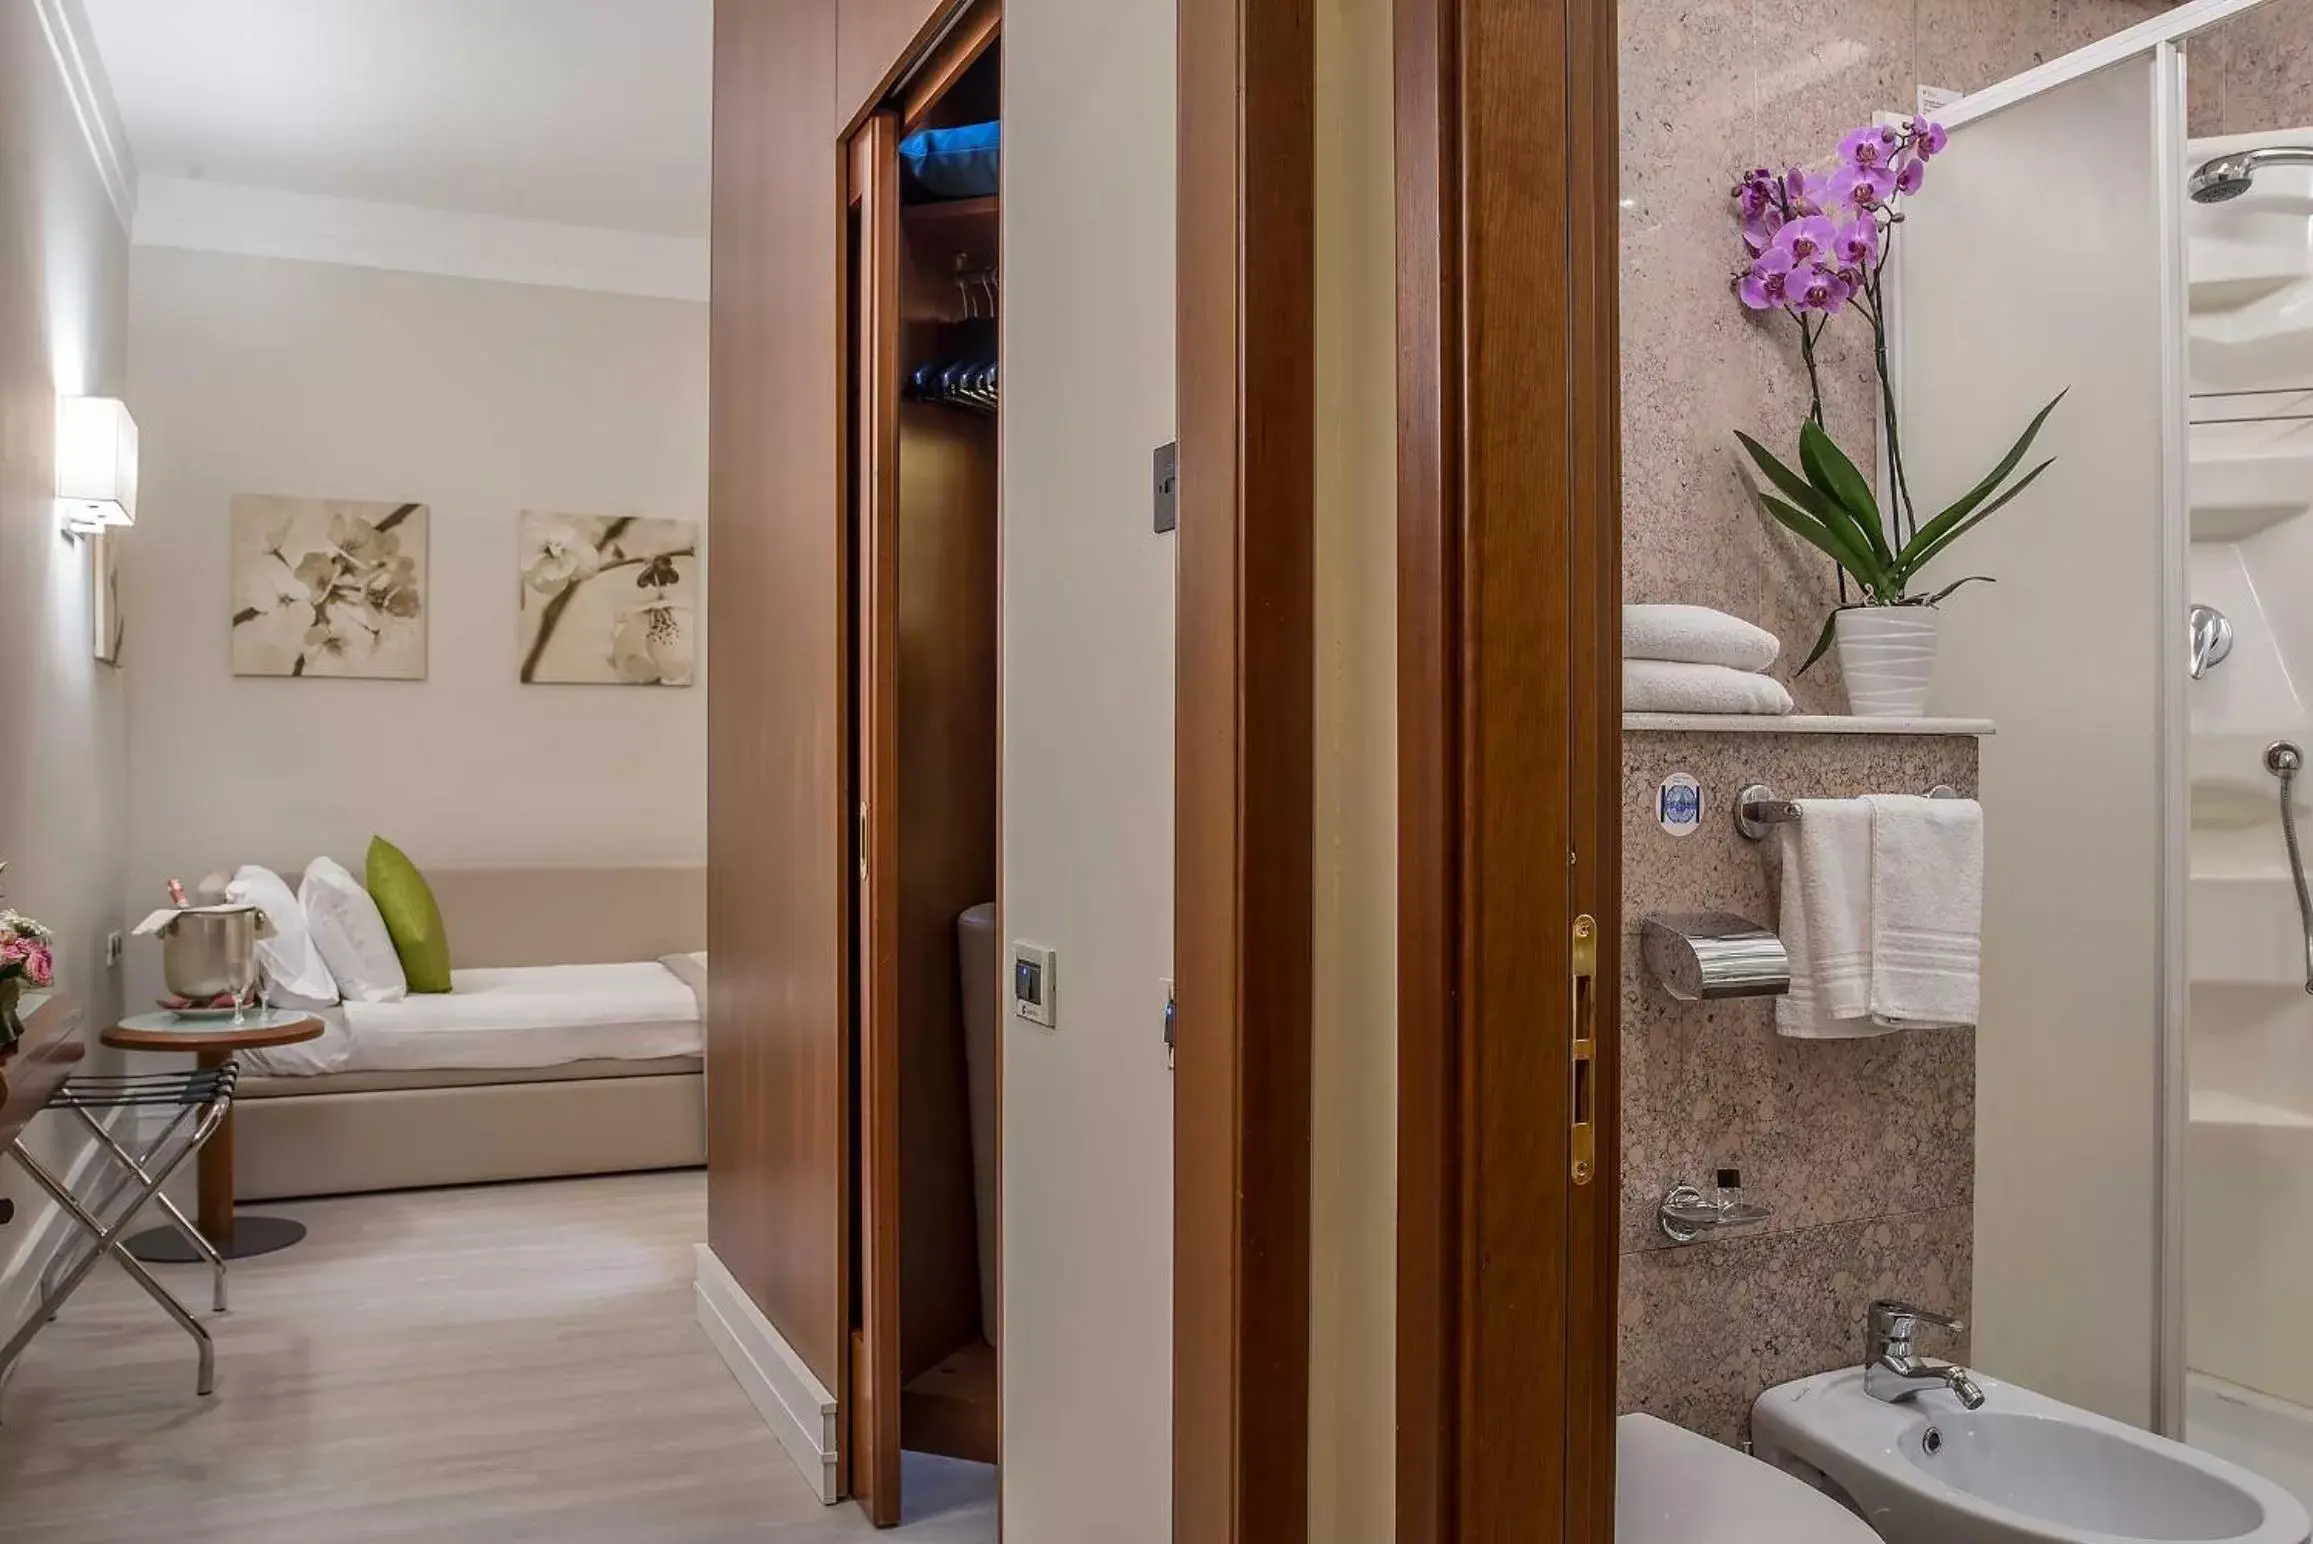 Photo of the whole room, Bathroom in Hotel La Giocca